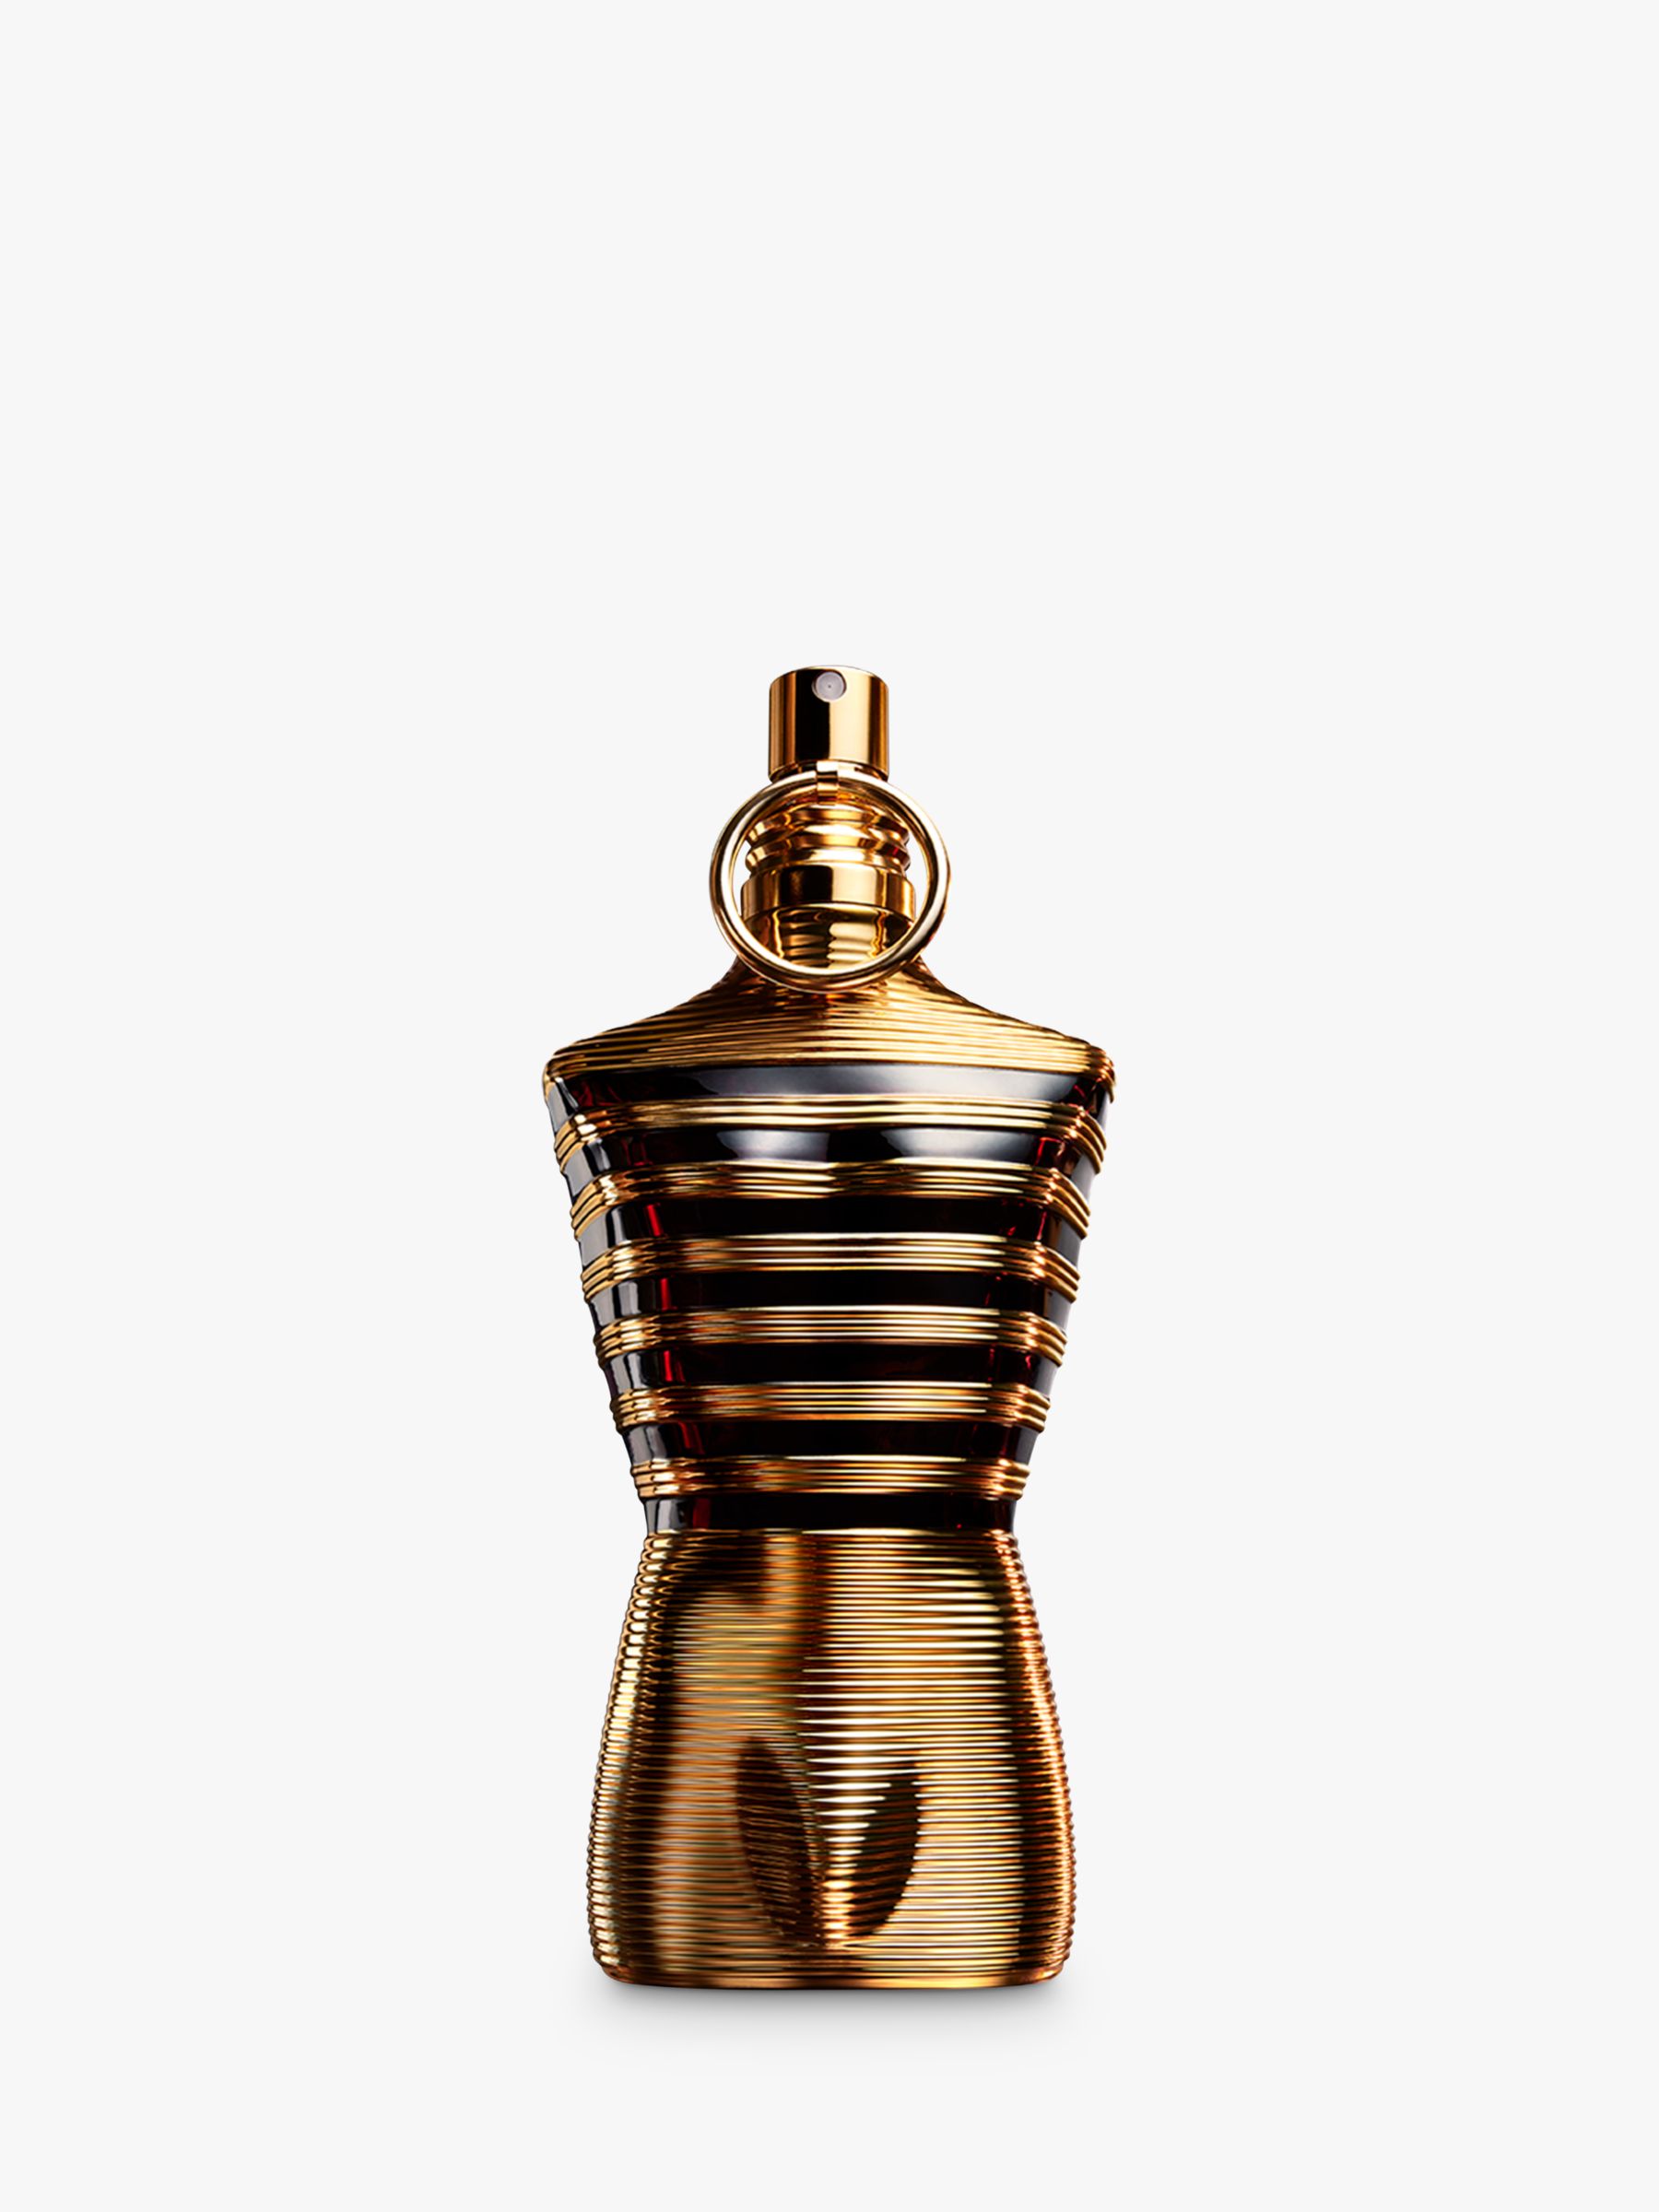 Jean Paul Gaultier Le Male Elixir Parfum, 75ml at John Lewis & Partners